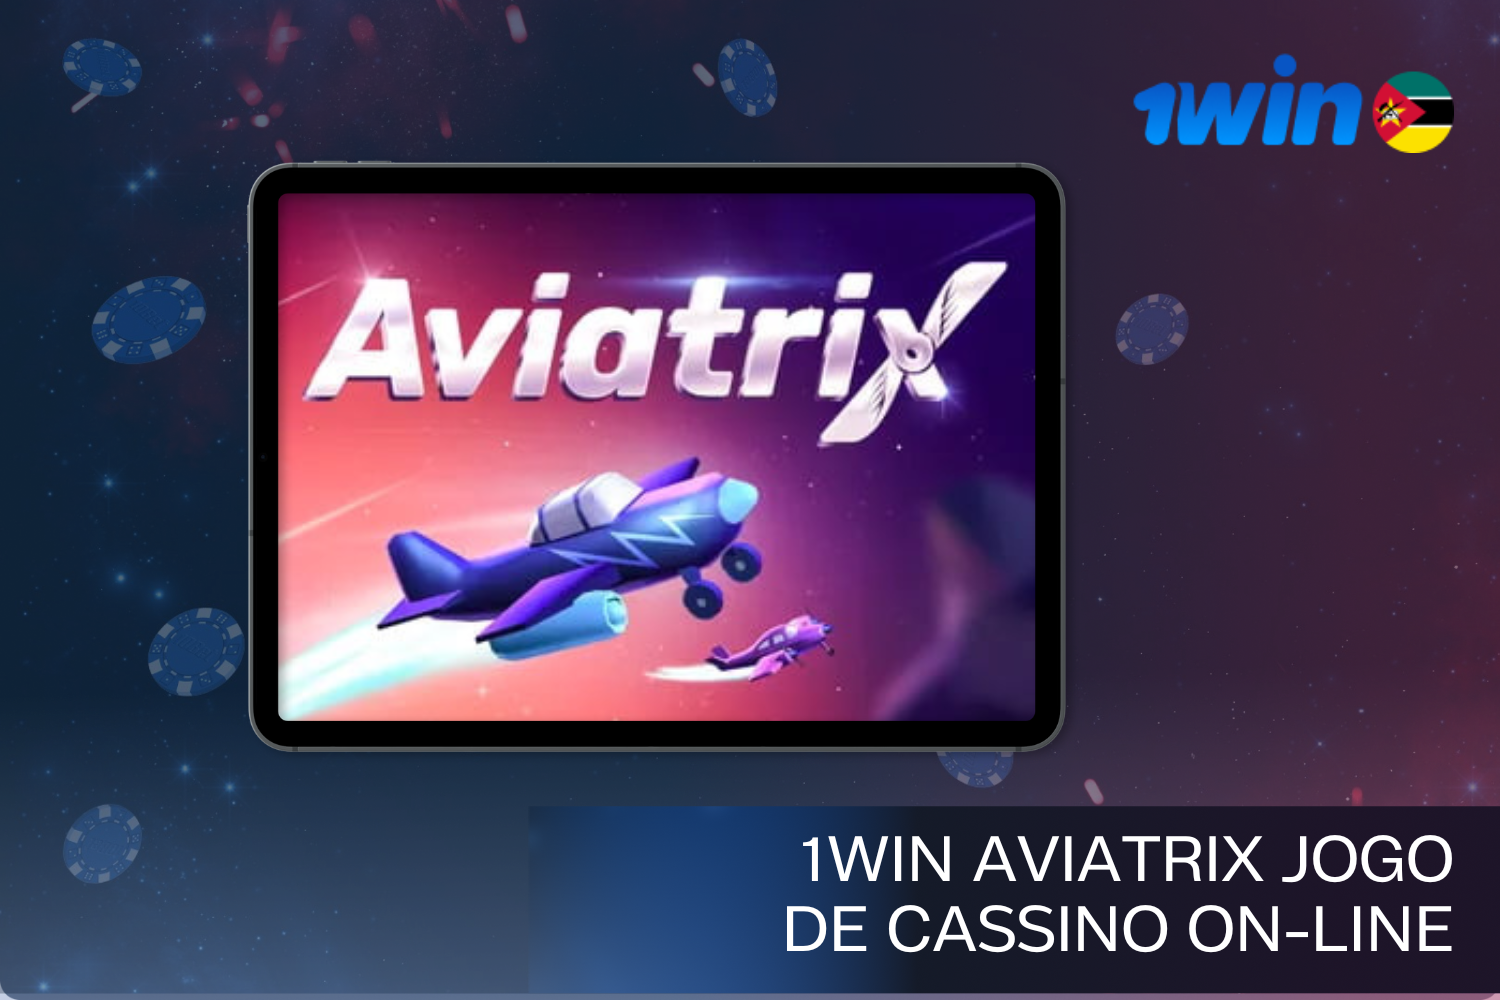 1win Aviatrix é um jogo de Crash único para jogadores de Moçambique onde pode ganhar dinheiro real.